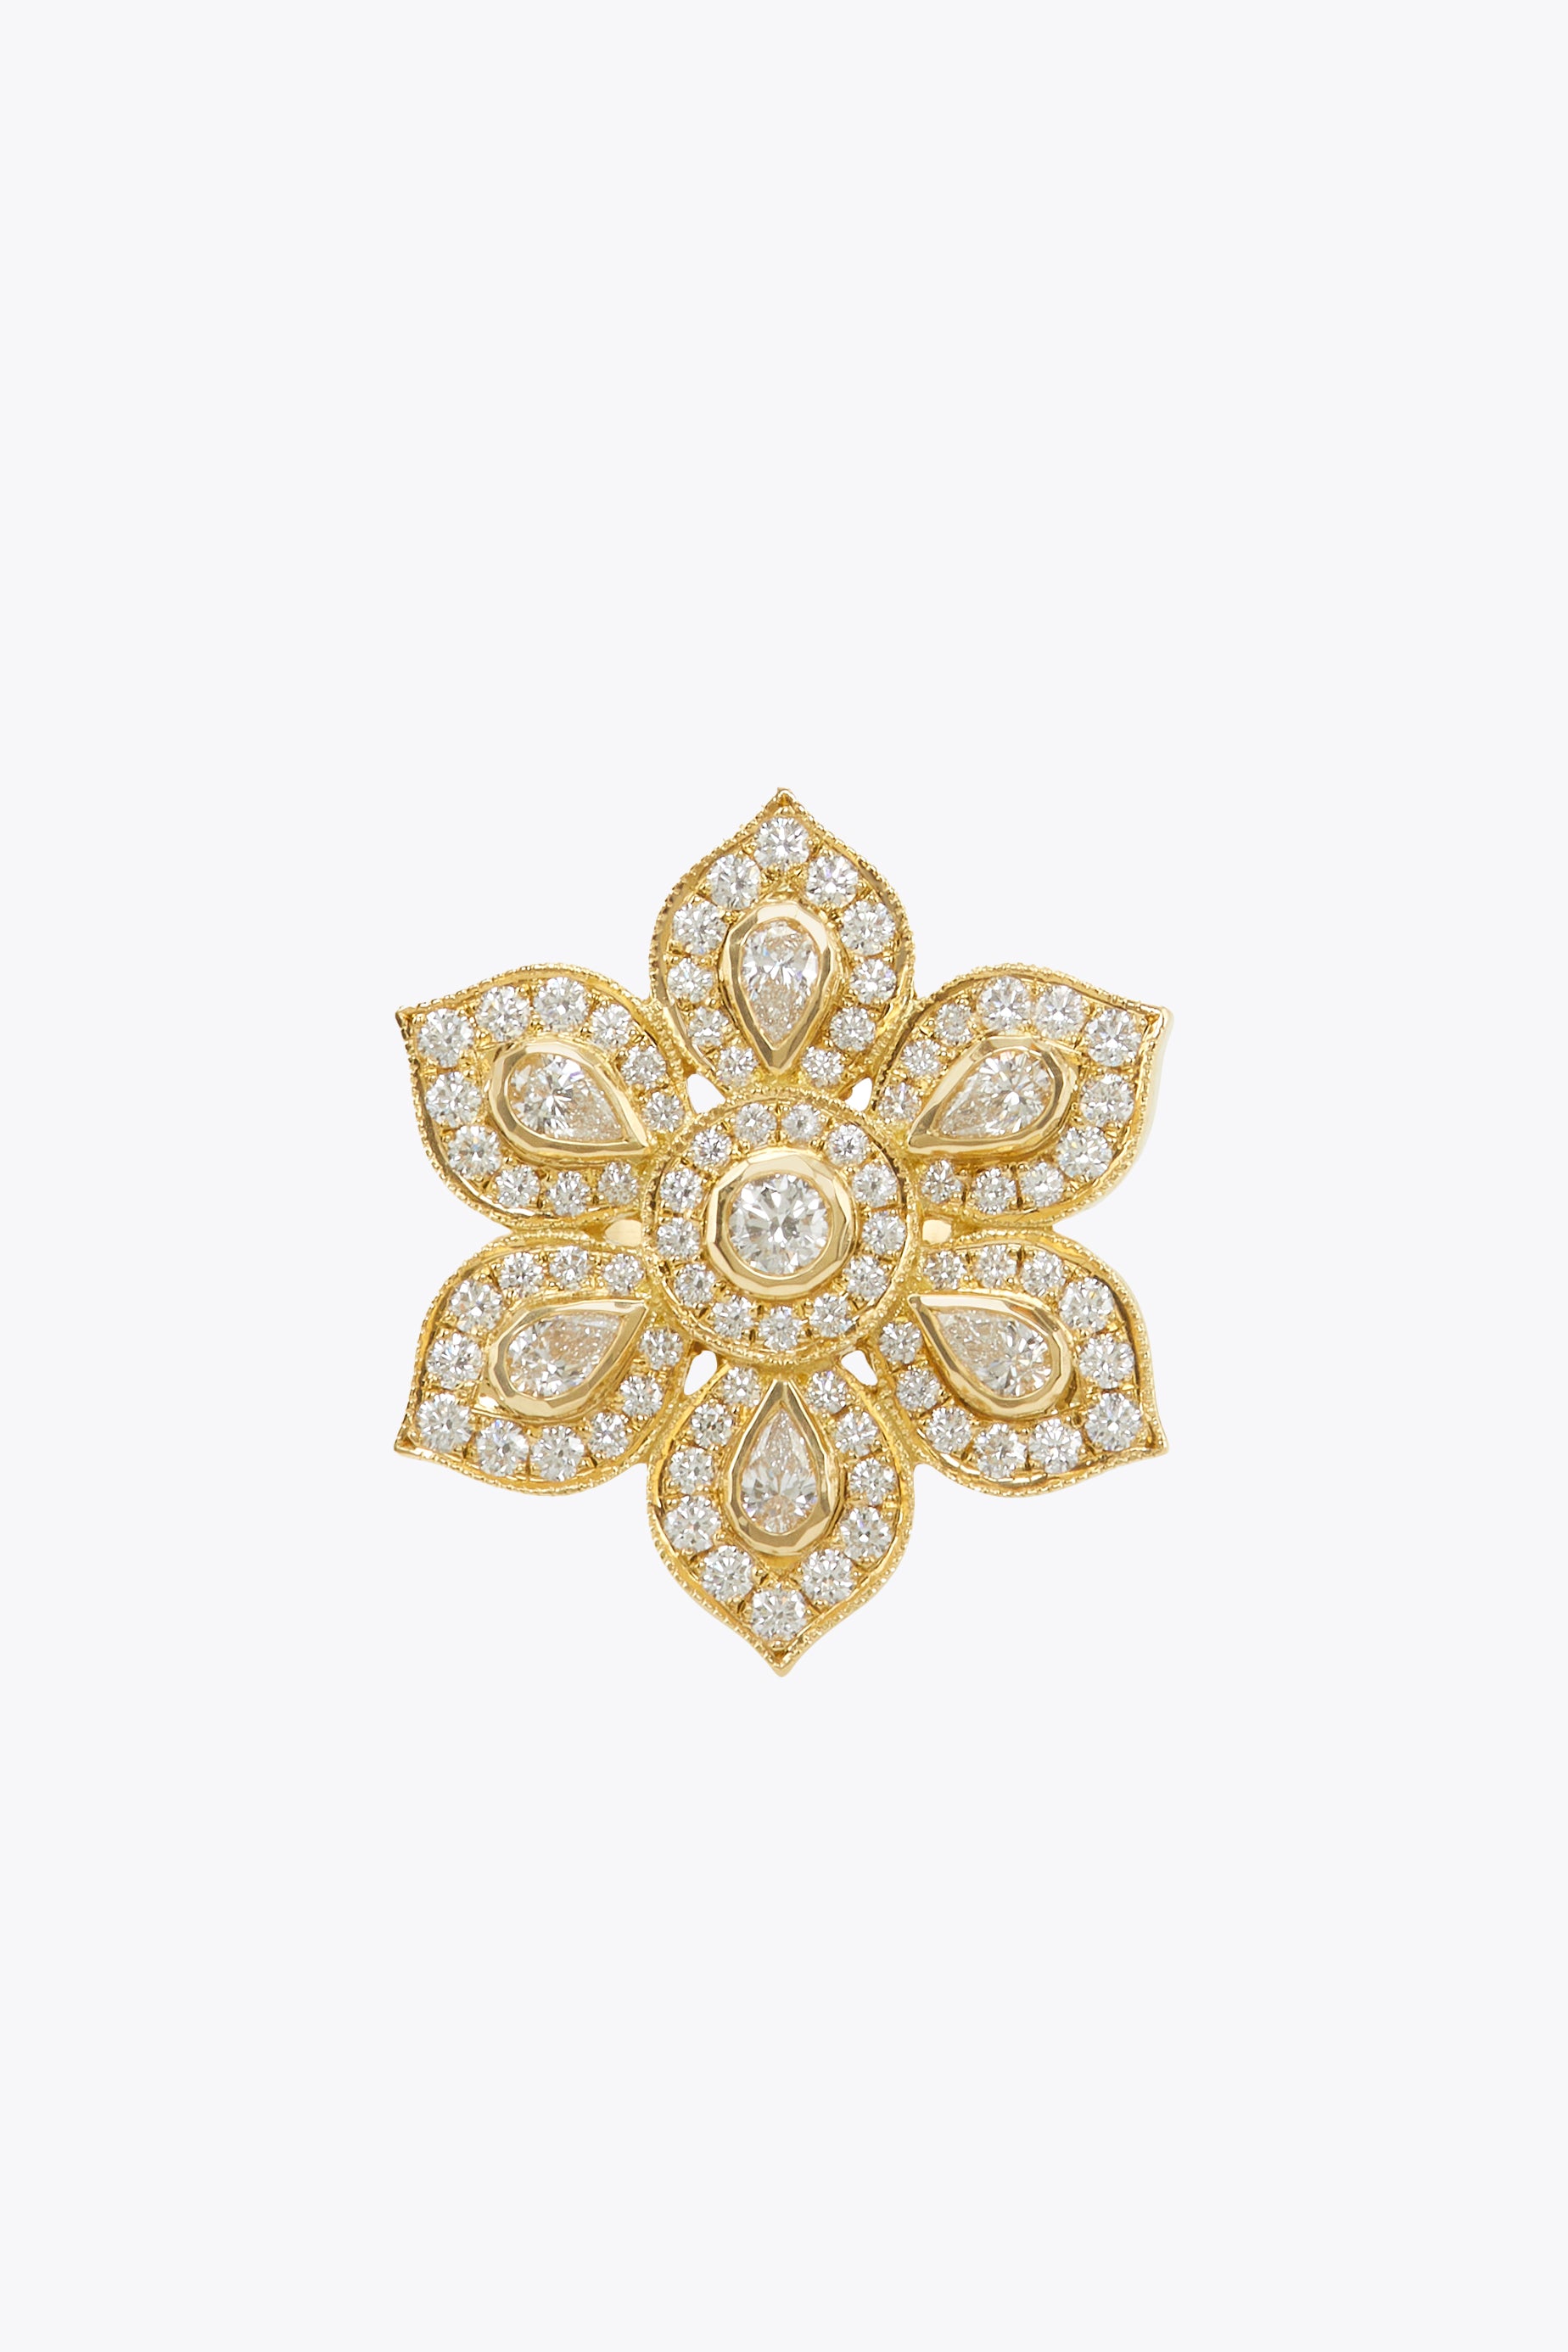 Diamond Lotus Ring